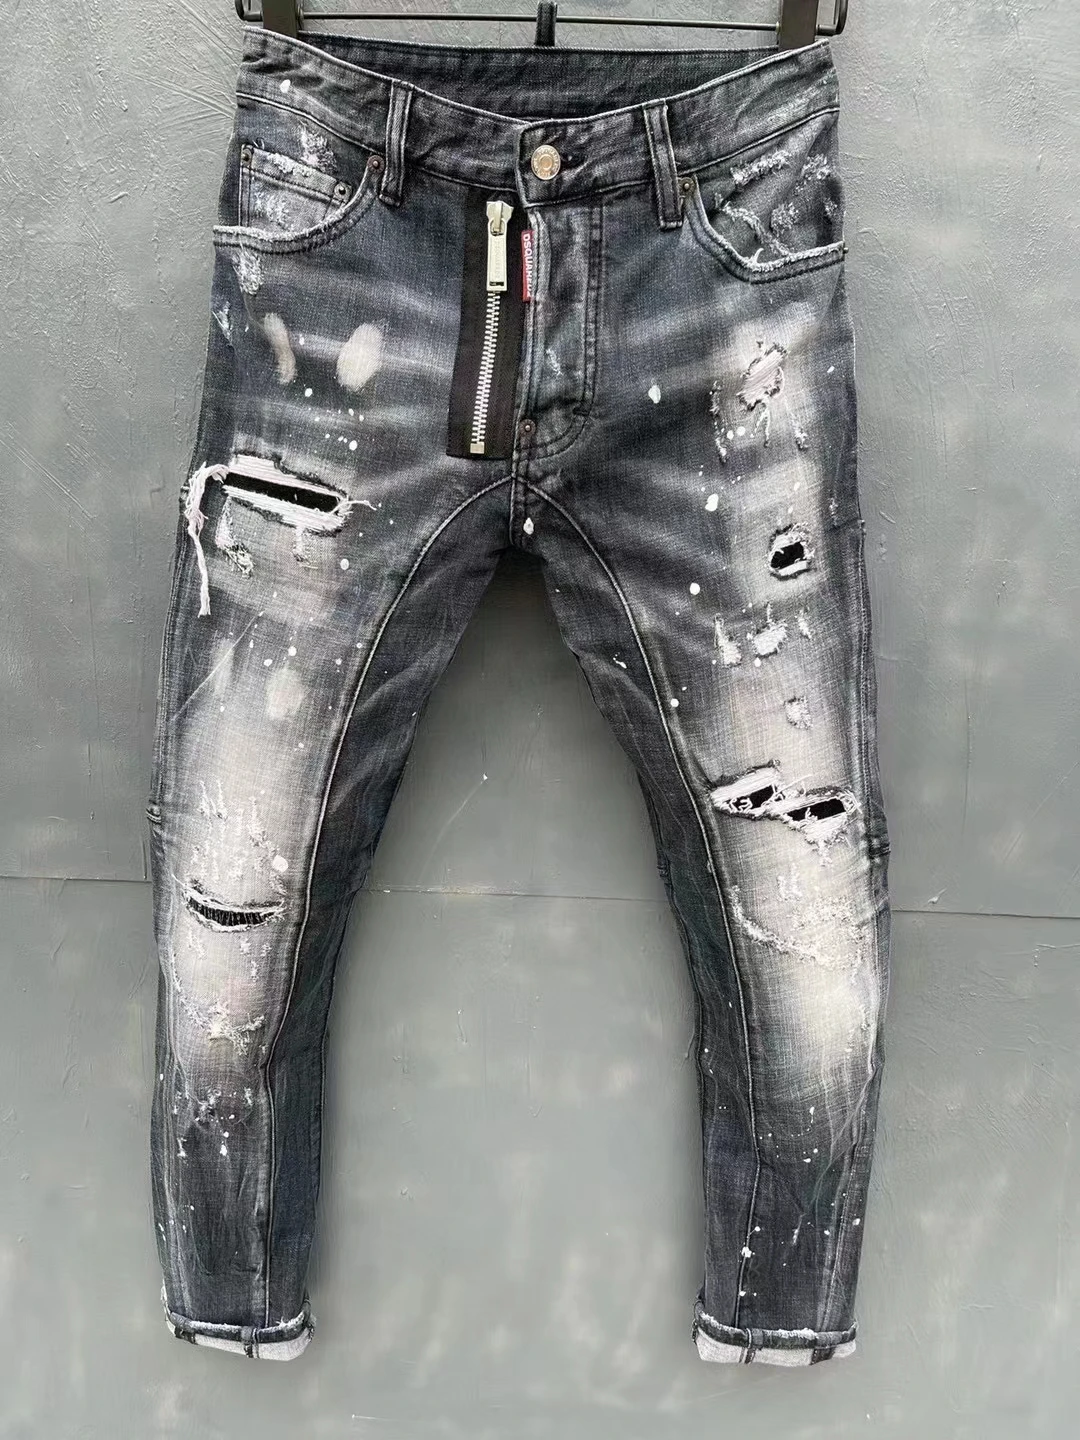 

2022 итальянский модный бренд DSQ2 мужские потертые, изношенные, рваные, лакированные мотоциклетные джинсы T152-1 #